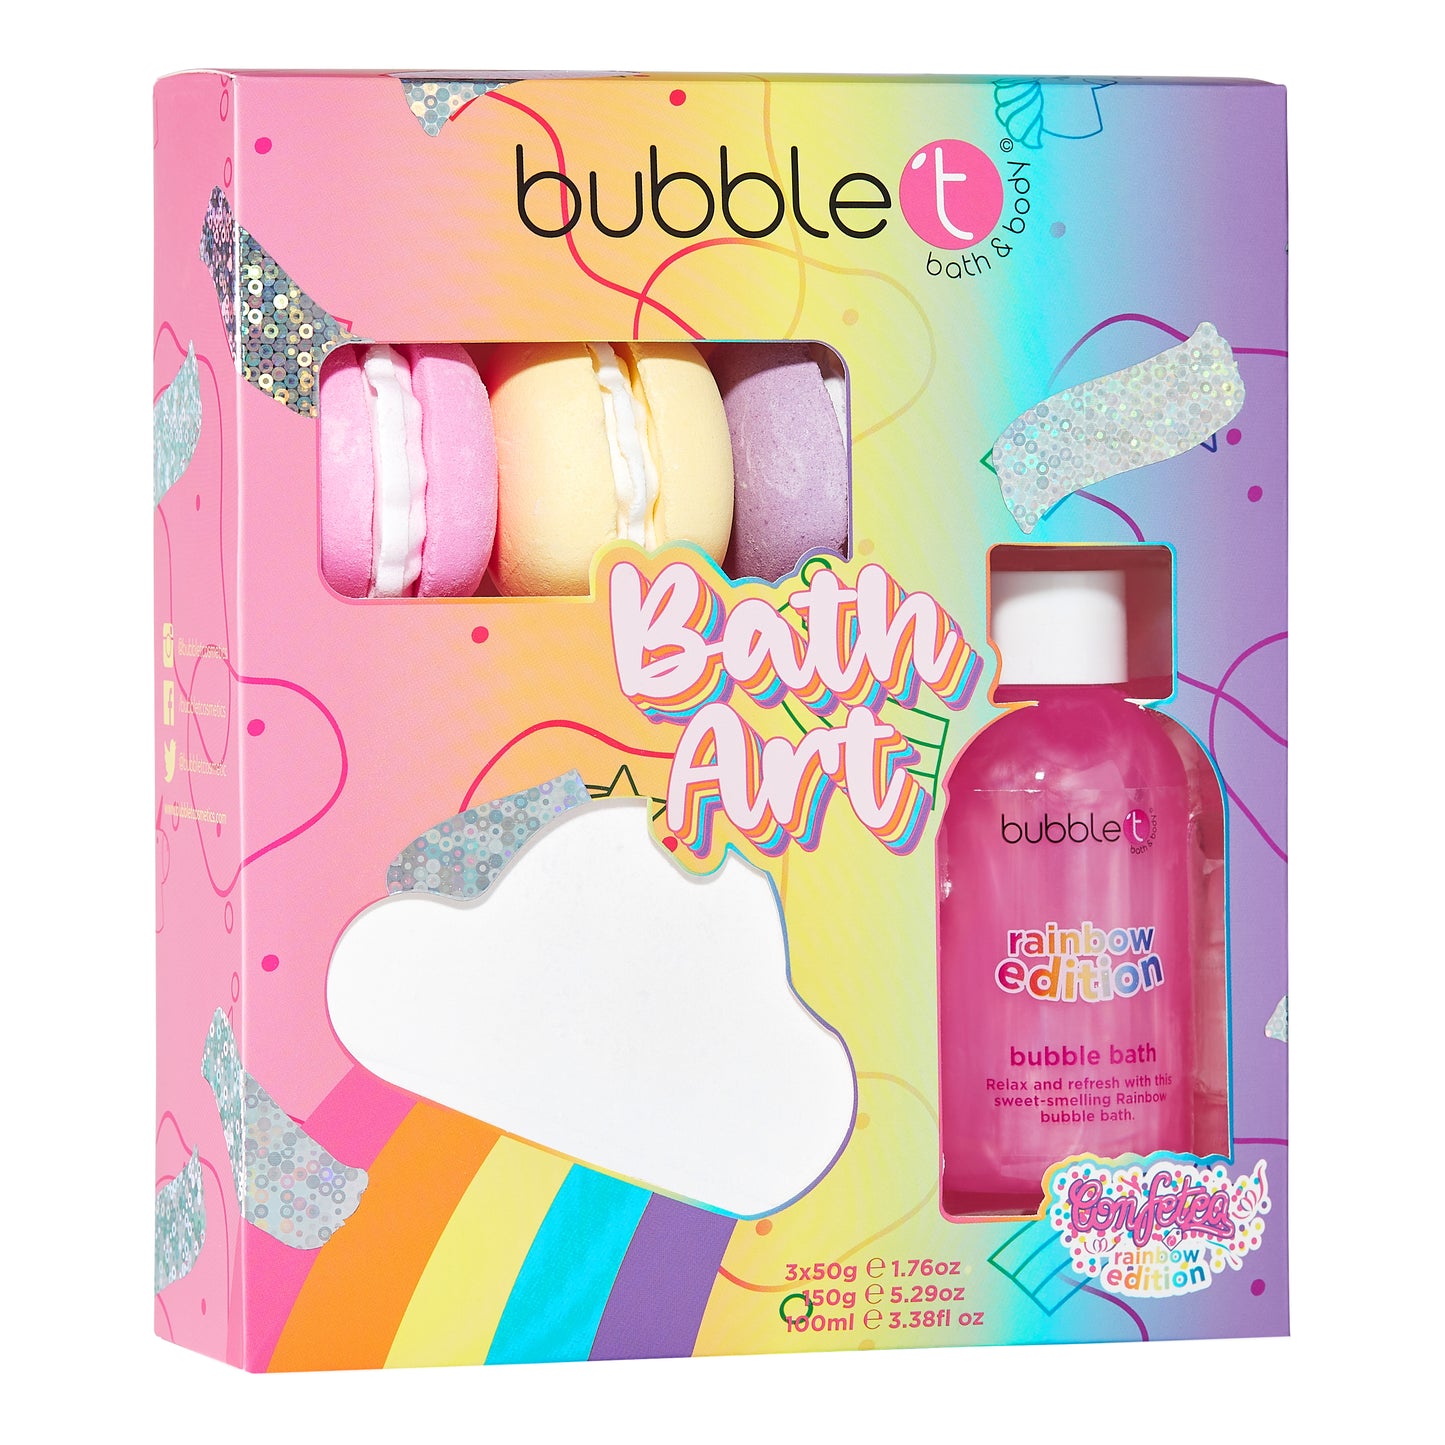 Bubble T Rainbow Cloud, Bath Bomb Fizzers and Bubble Bath Gift Set